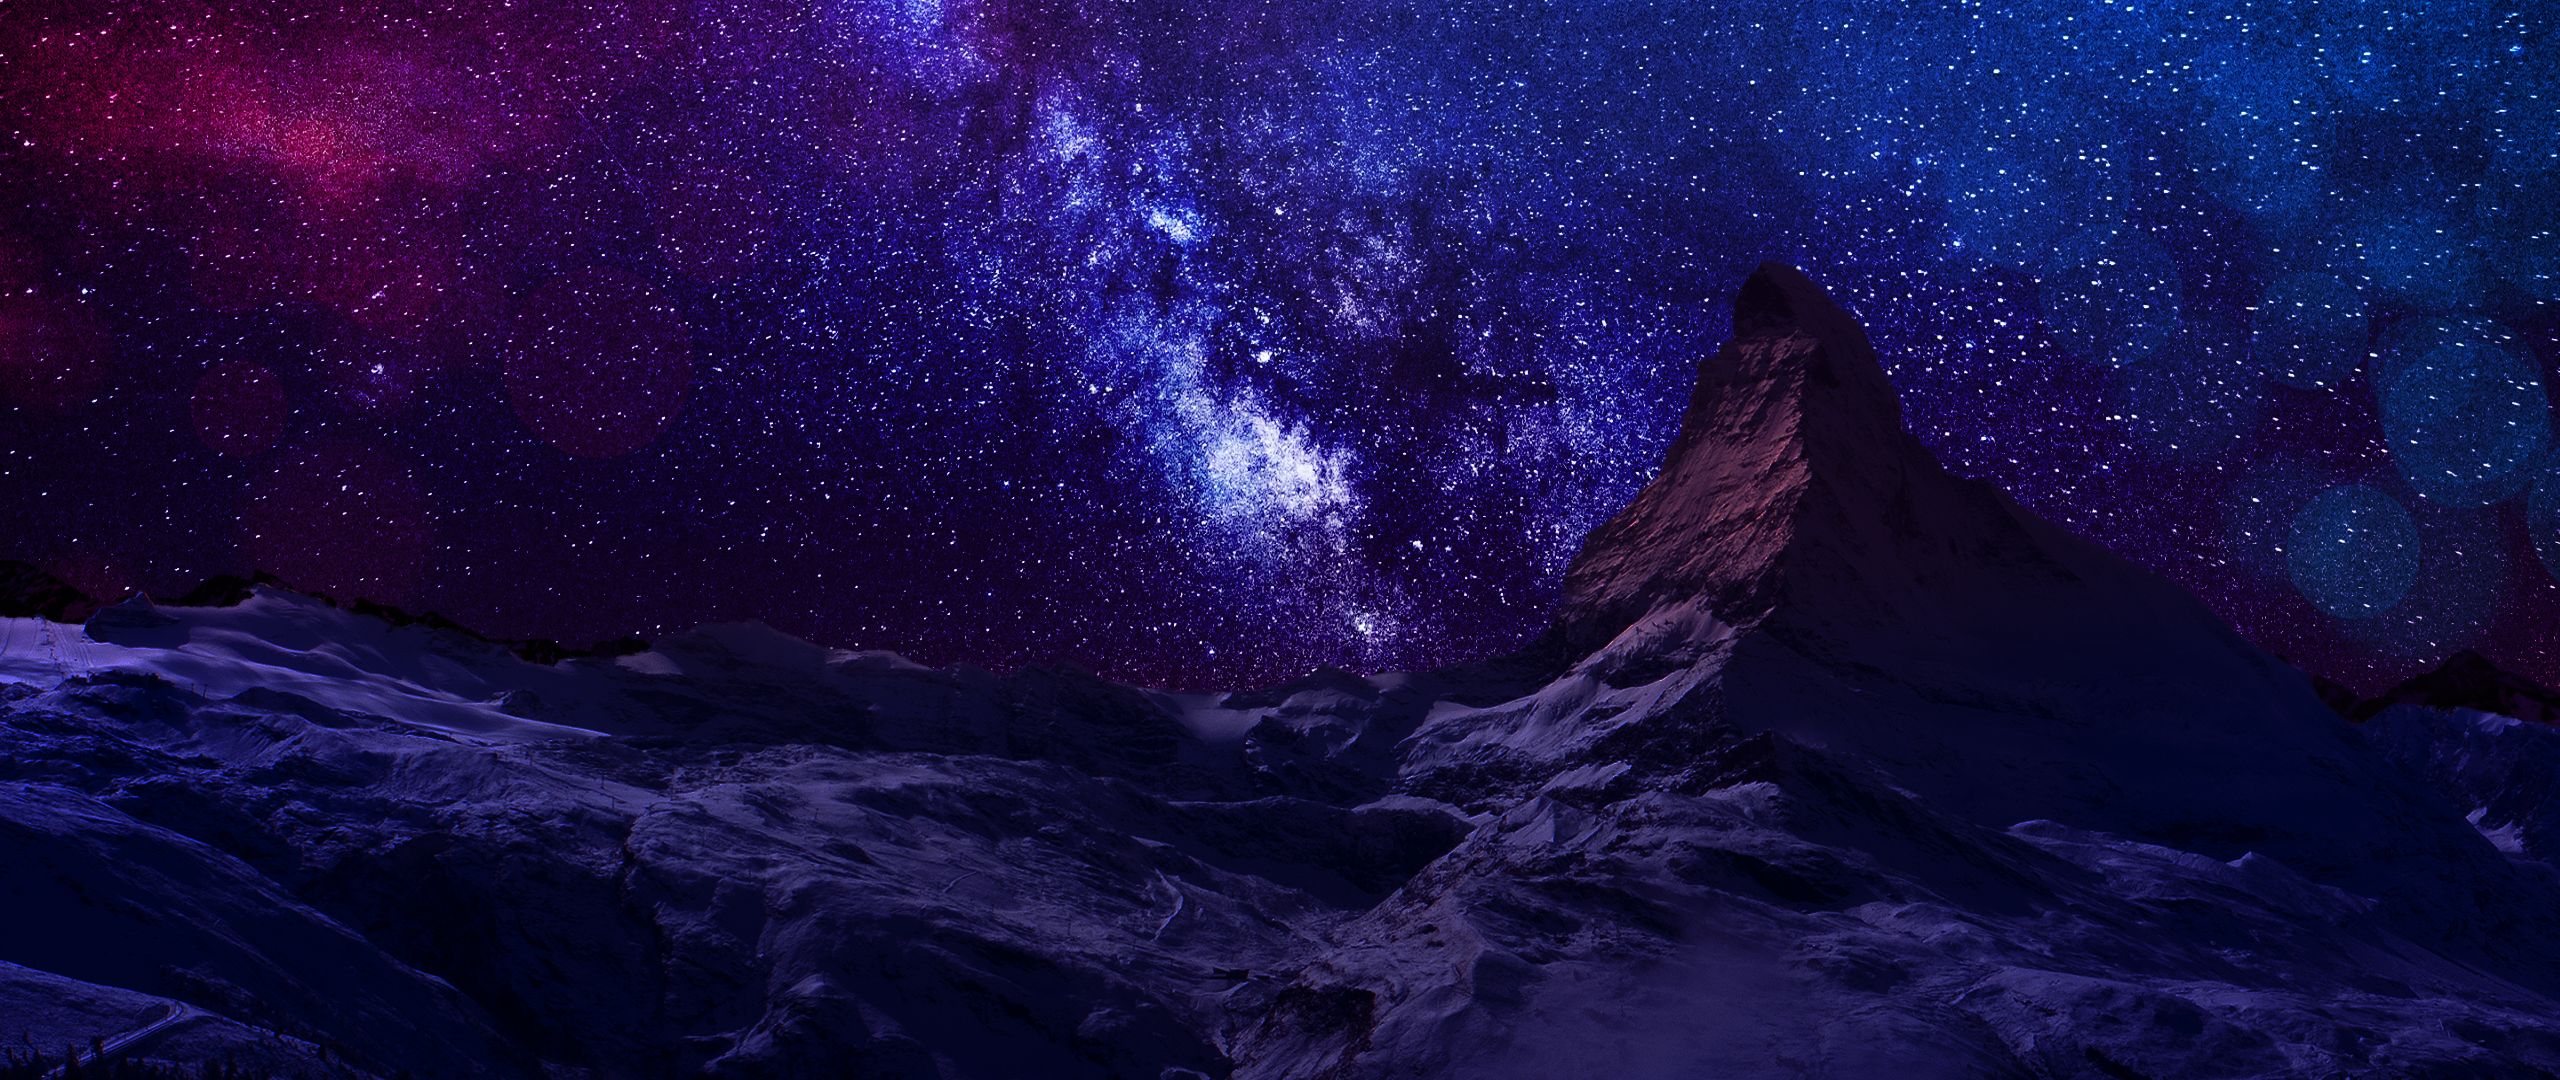 Скачать обои бесплатно Небо, Звезды, Ночь, Гора, Земля/природа картинка на рабочий стол ПК